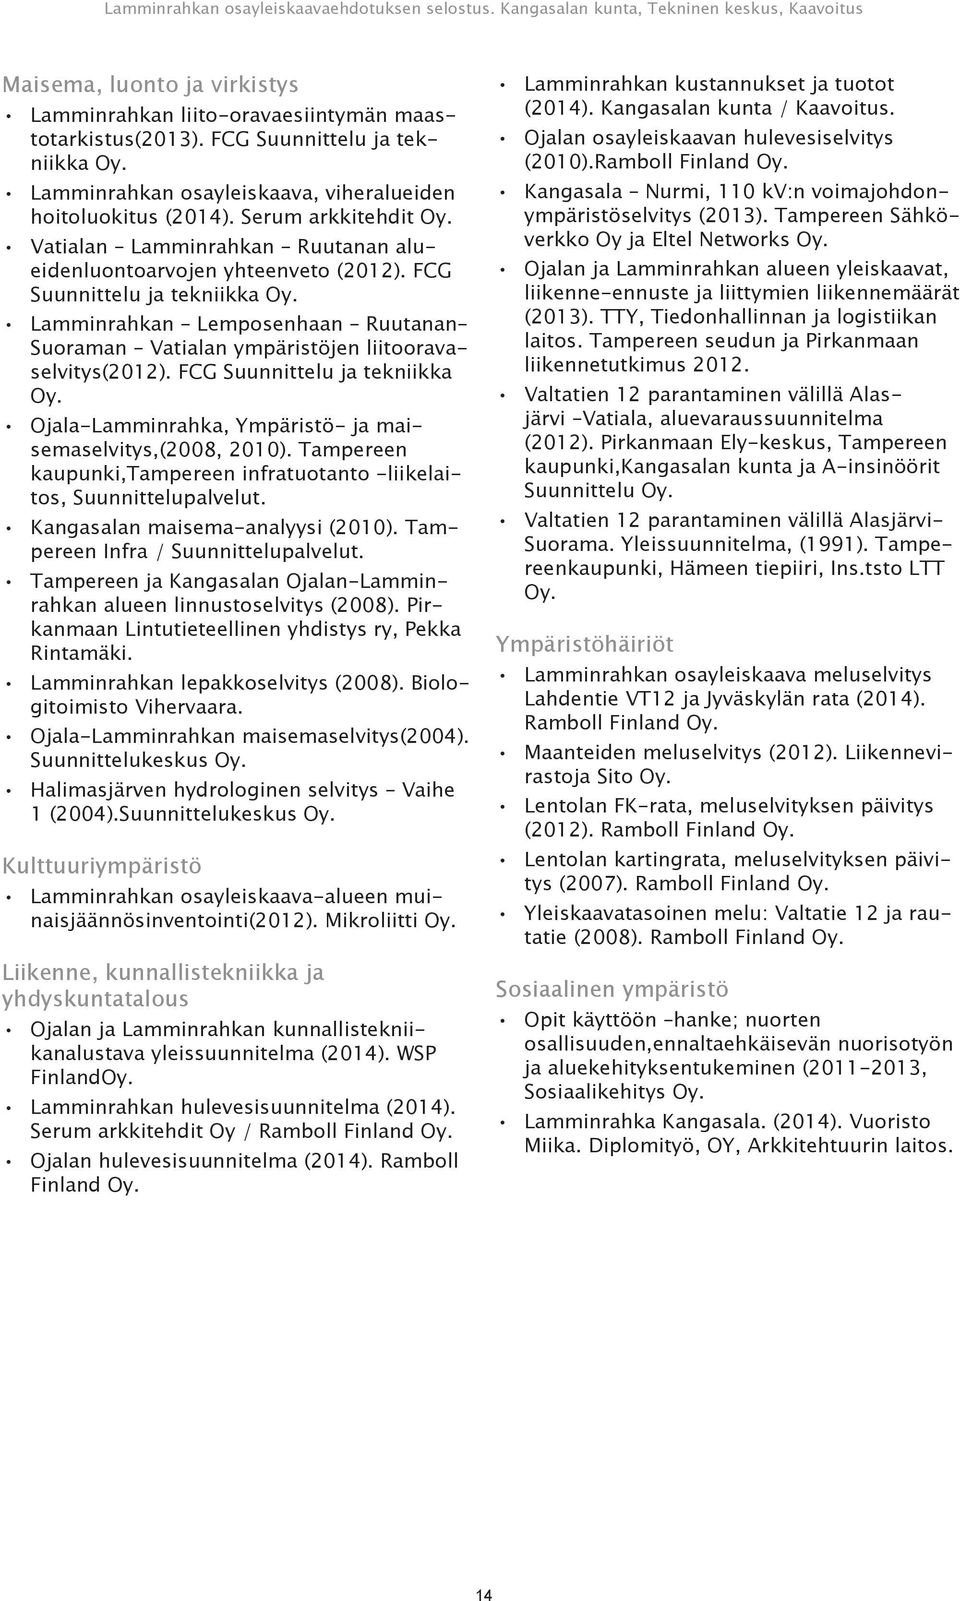 Lamminrahkan Lemposenhaan Ruutanan Suoraman Vatialan ympäristöjen liitooravaselvitys(2012). FCG Suunnittelu ja tekniikka Oy. Ojala-Lamminrahka, Ympäristö- ja maisemaselvitys,(2008, 2010).